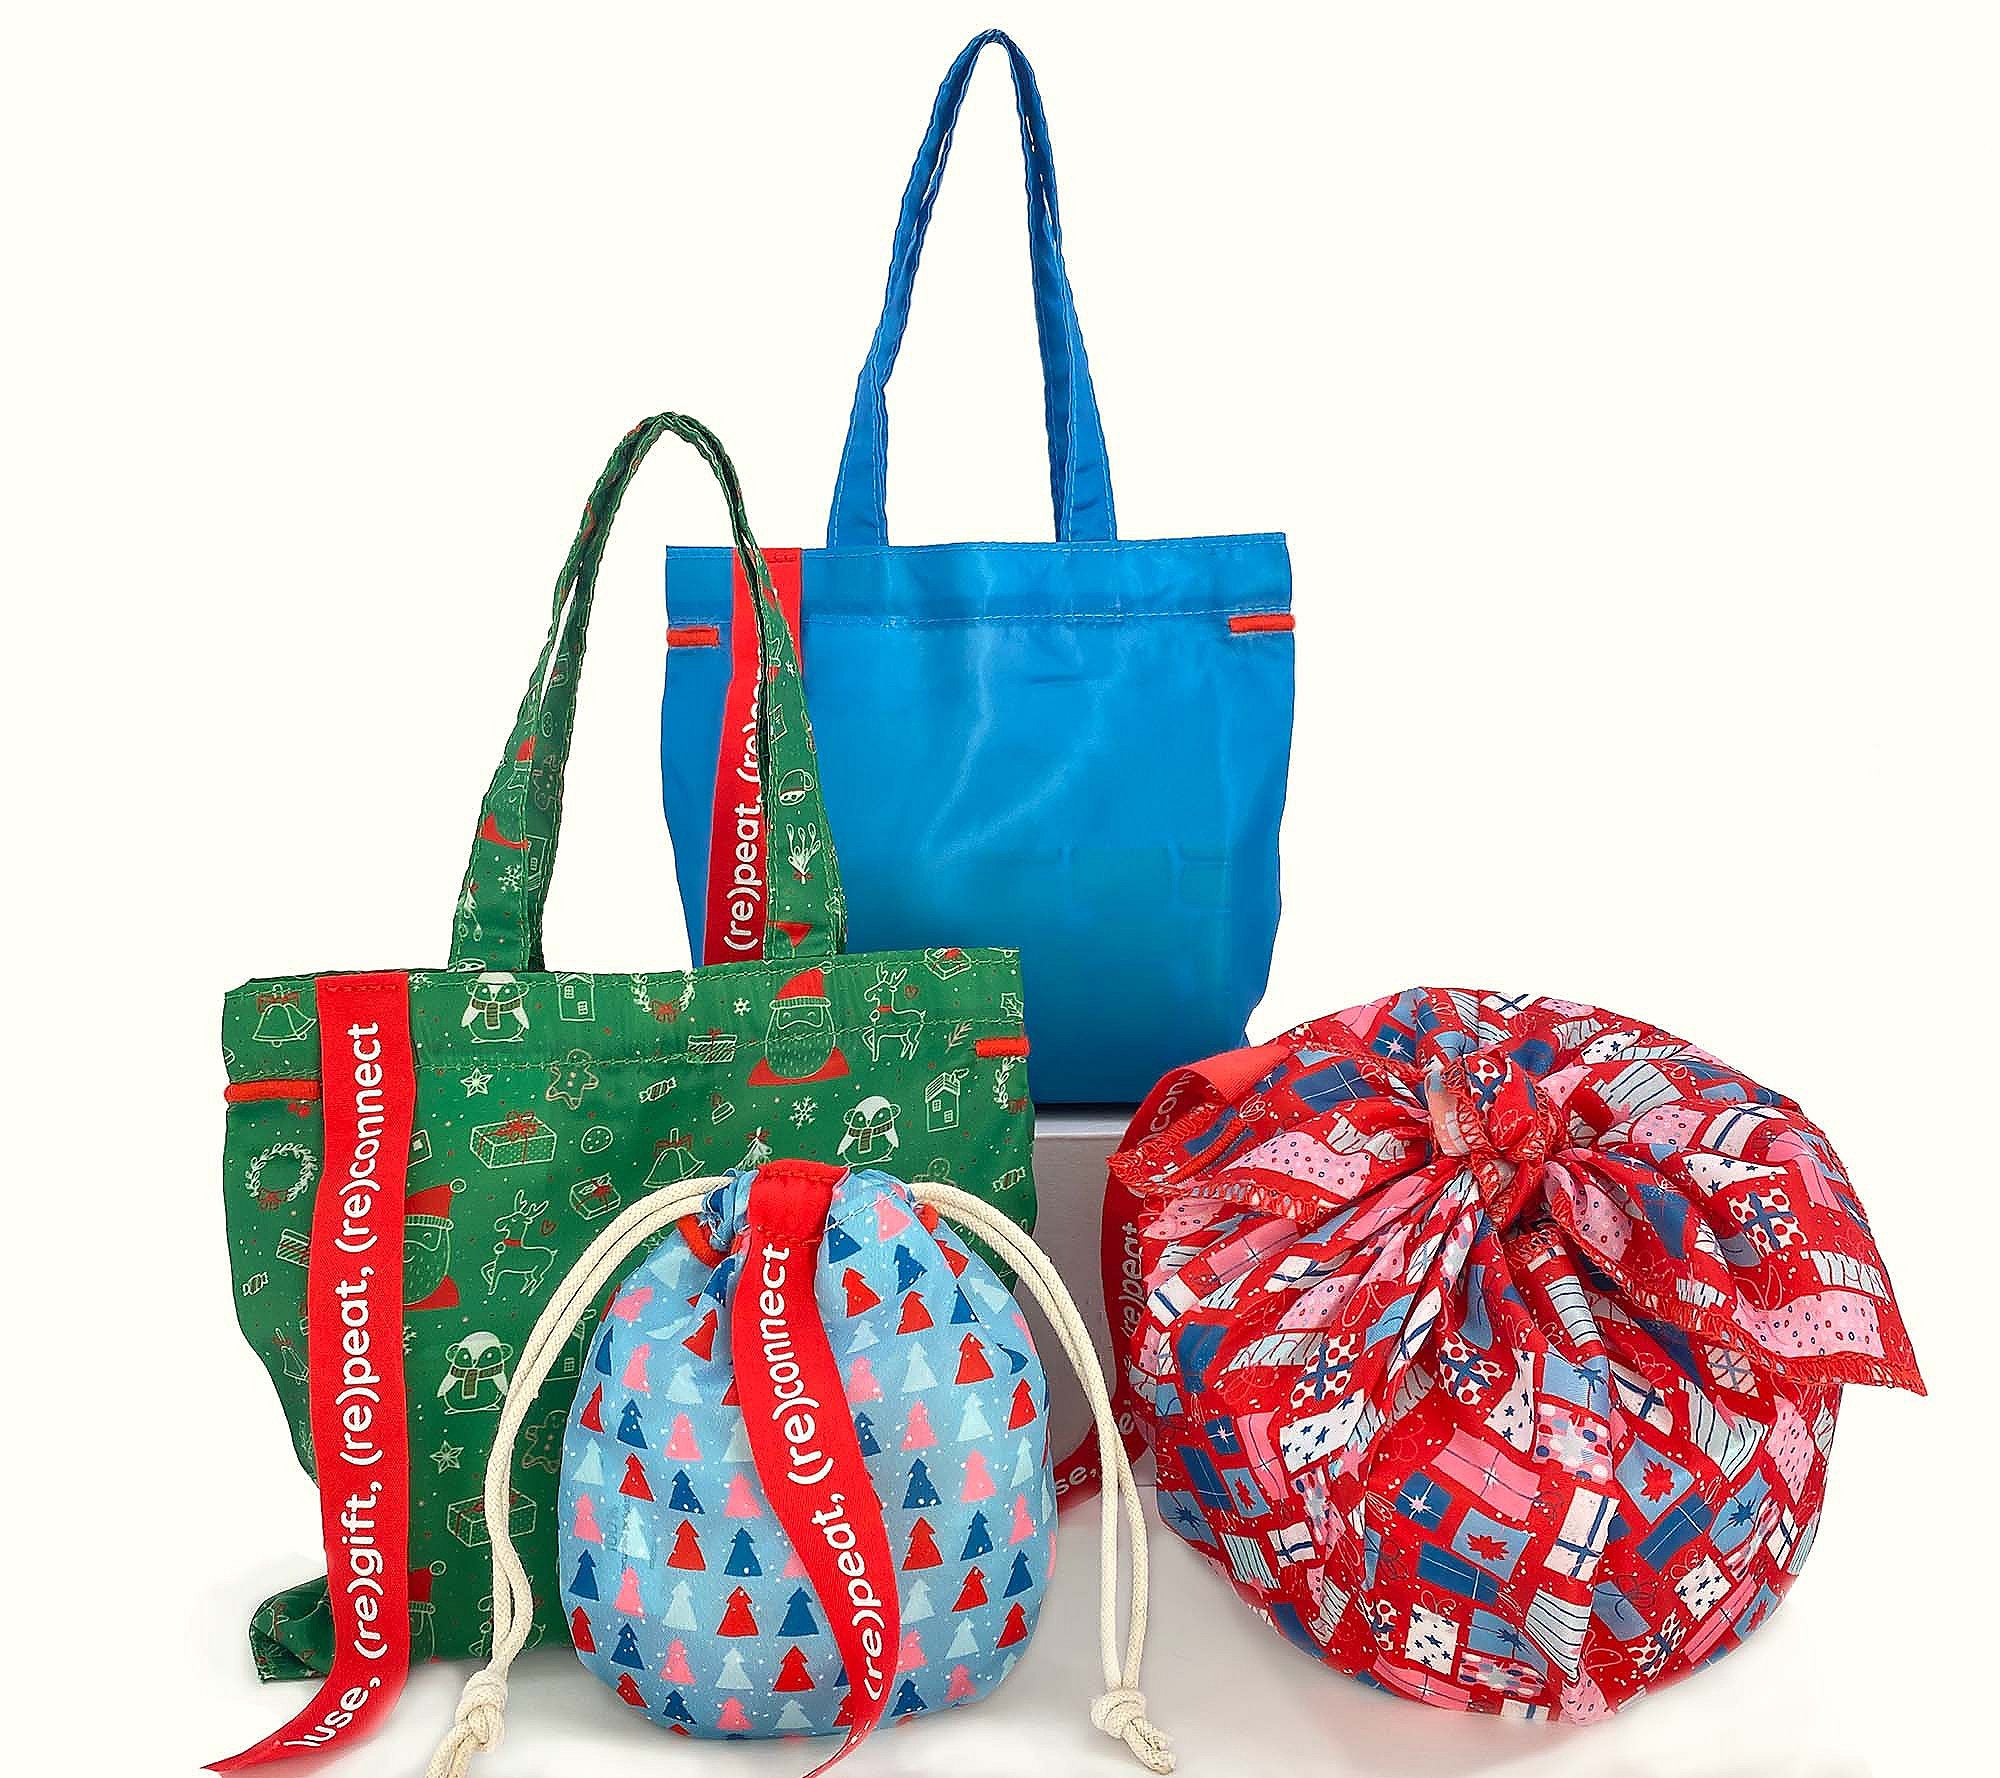 Gift with Purpose 4-pc Reusable Gift Bag & Wrap Set